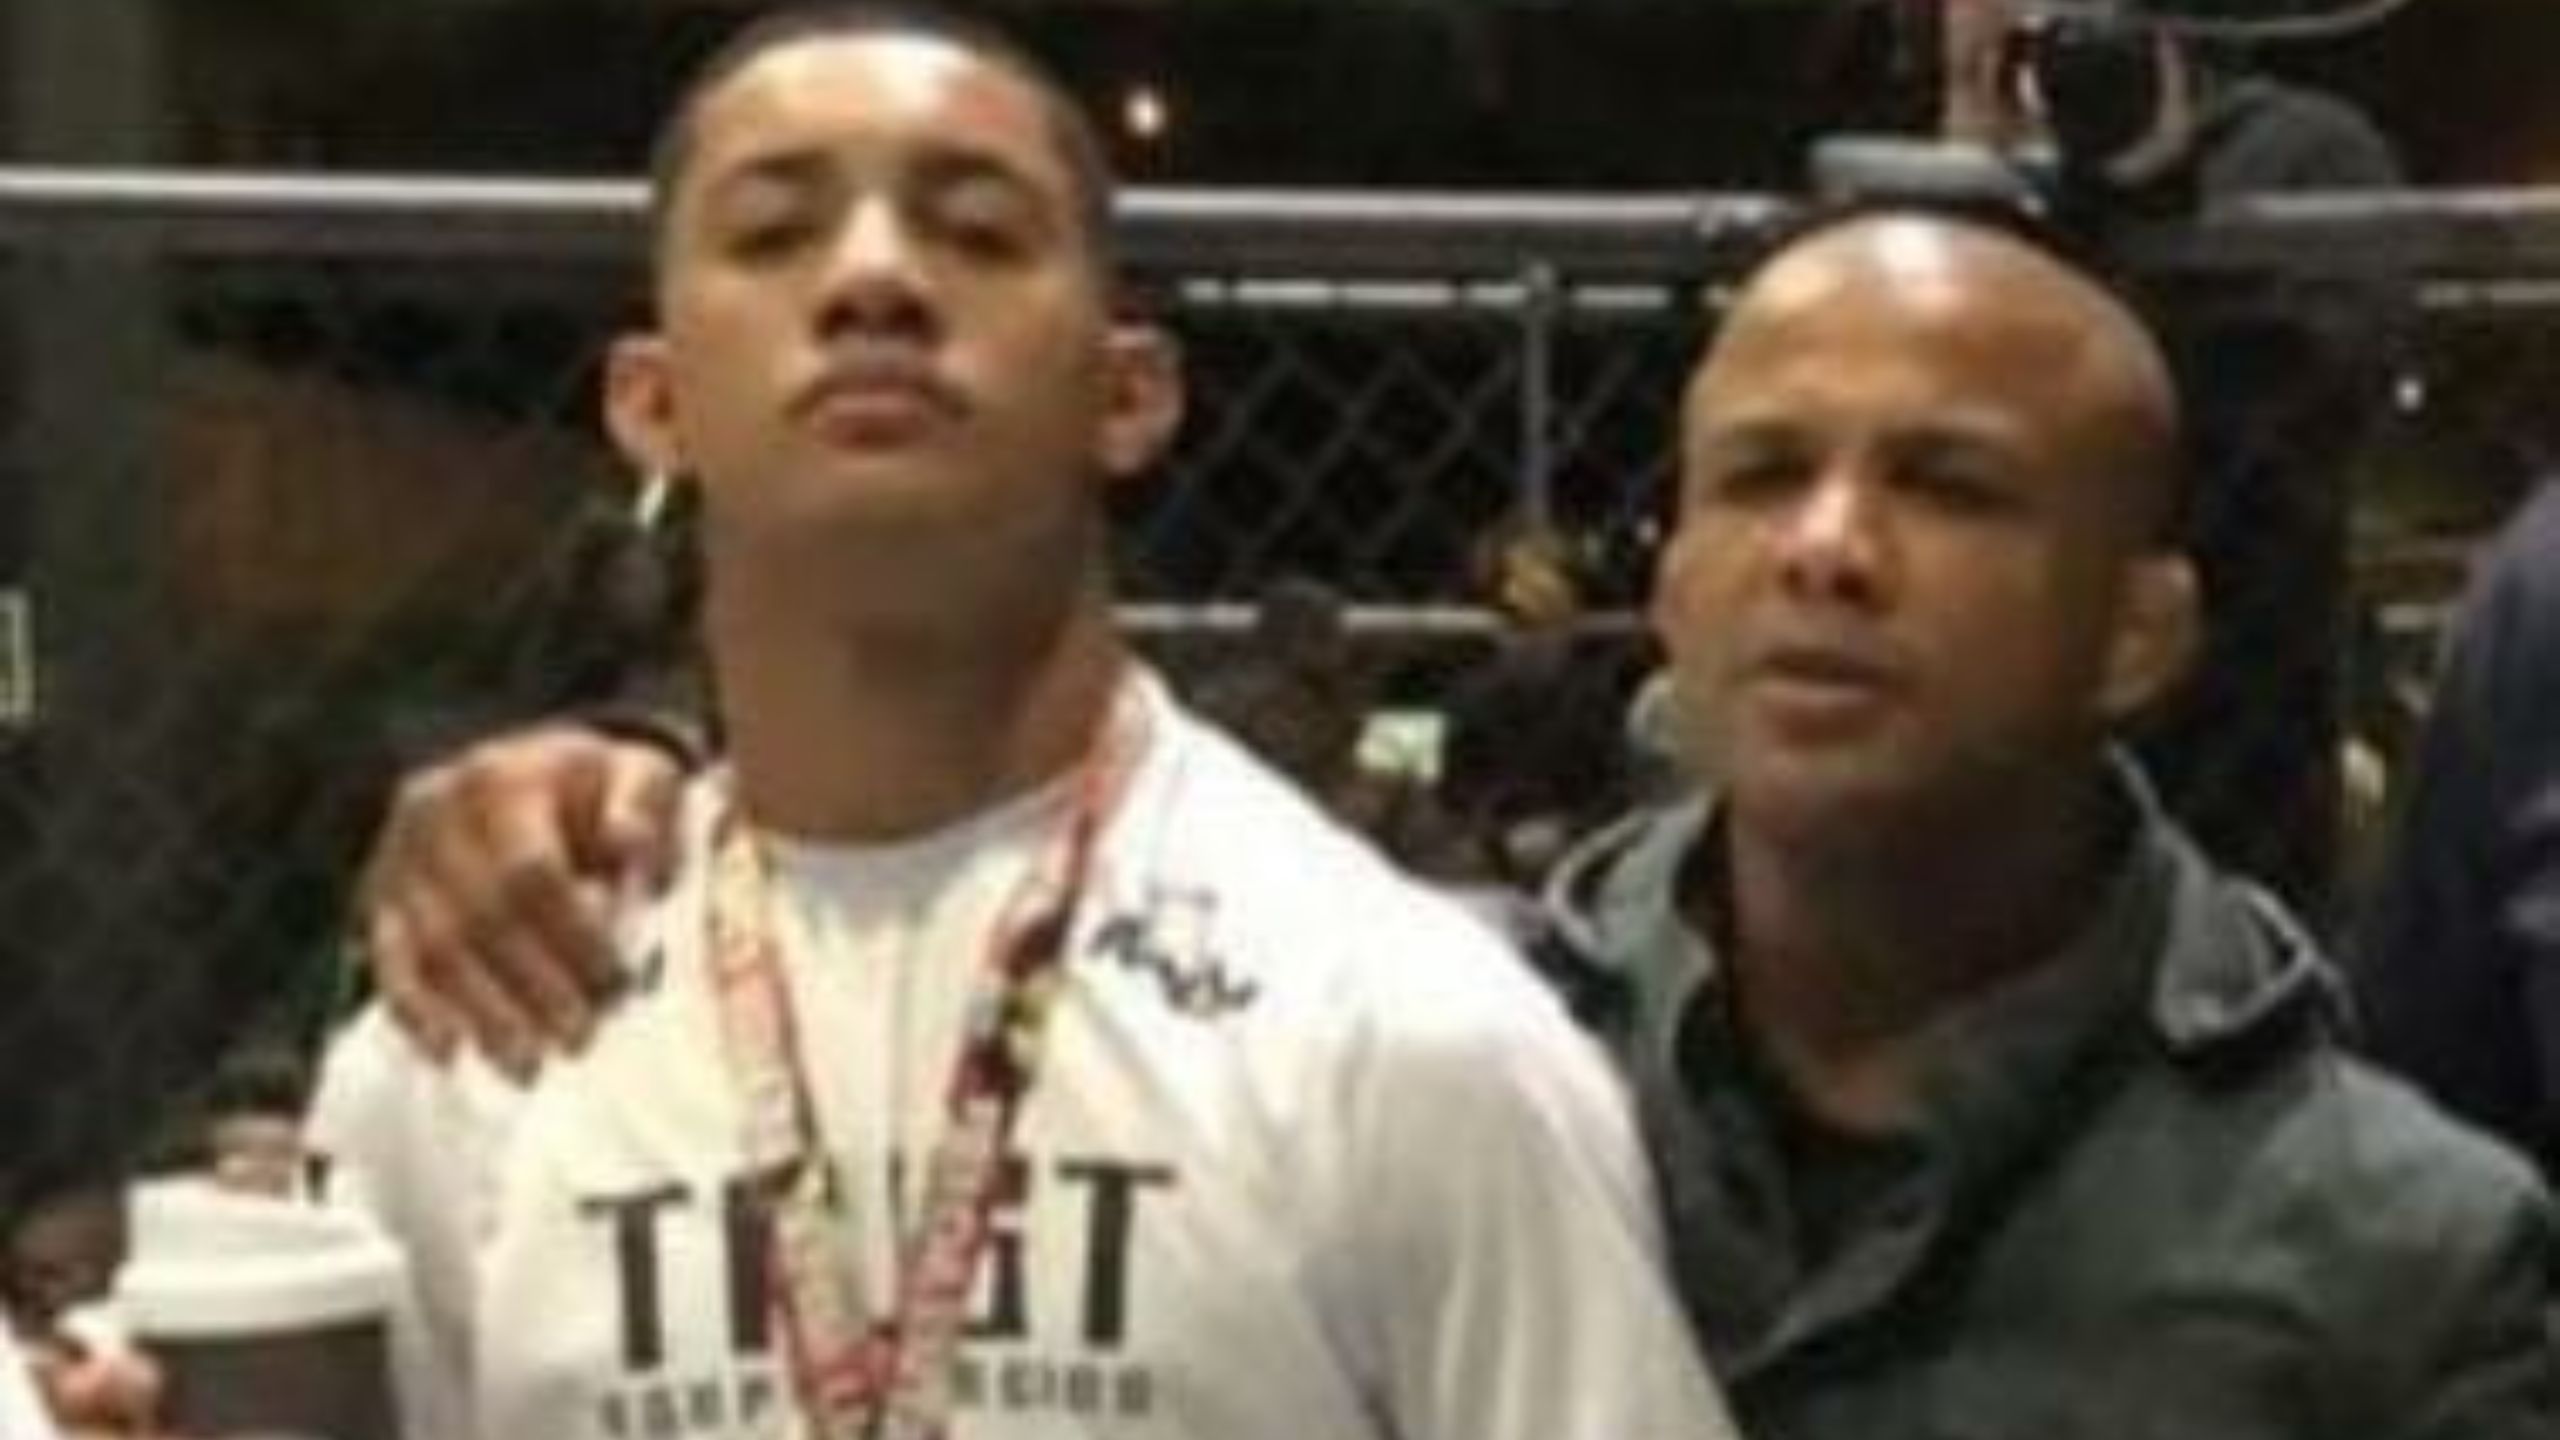 Pai e filho, lutadores de MMA, são acusados de agredir jovem durante carnaval no Rio; saiba os detalhes